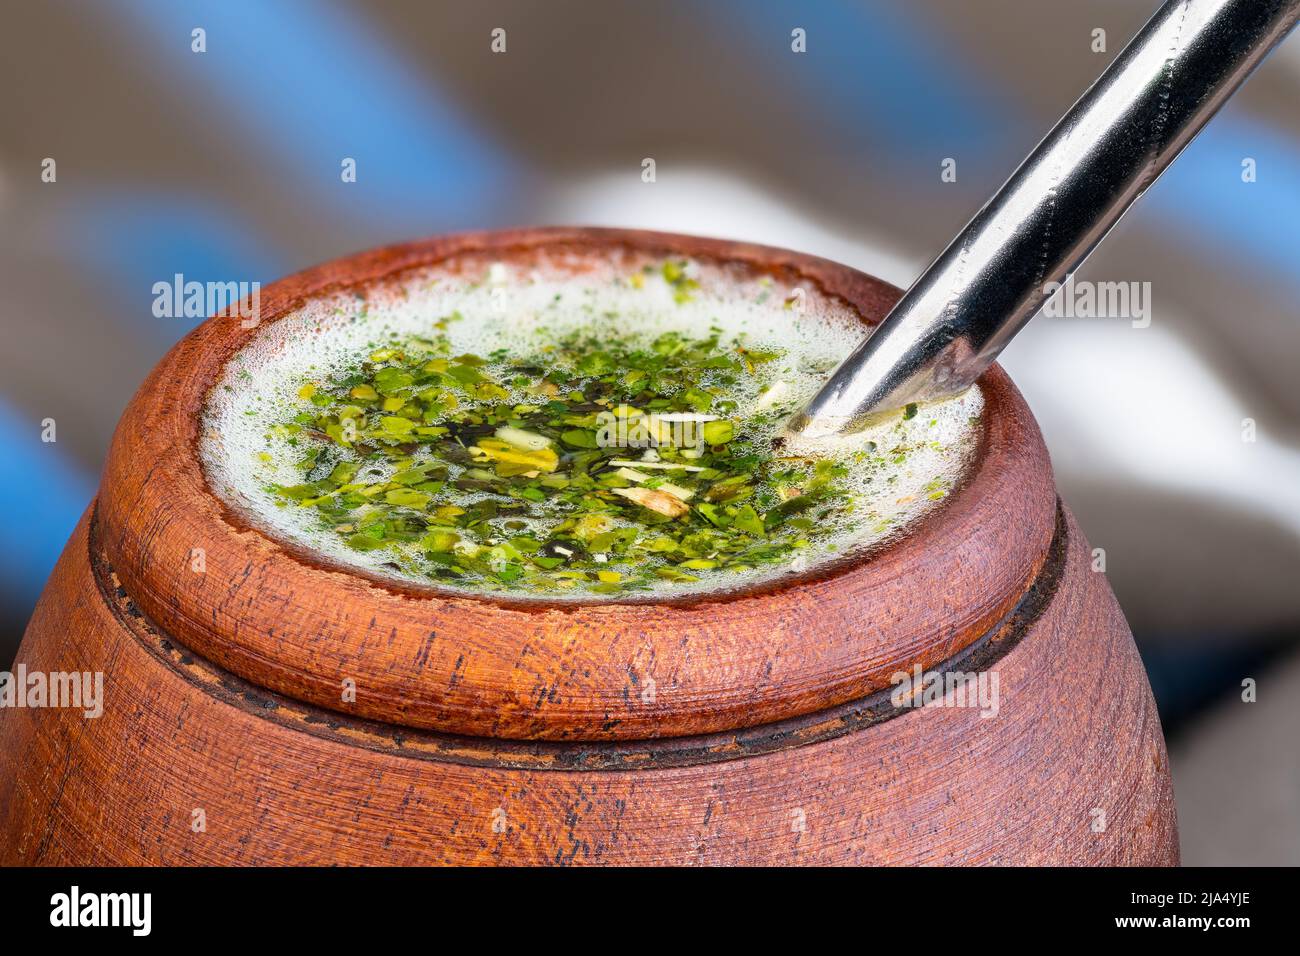 Copa de madera de yerba mate caliente con detalle de paja de bombilla de metal. Hojas de acebo verde secas y espuma blanca en té de hierbas. Bebida tradicional sudamericana. Foto de stock